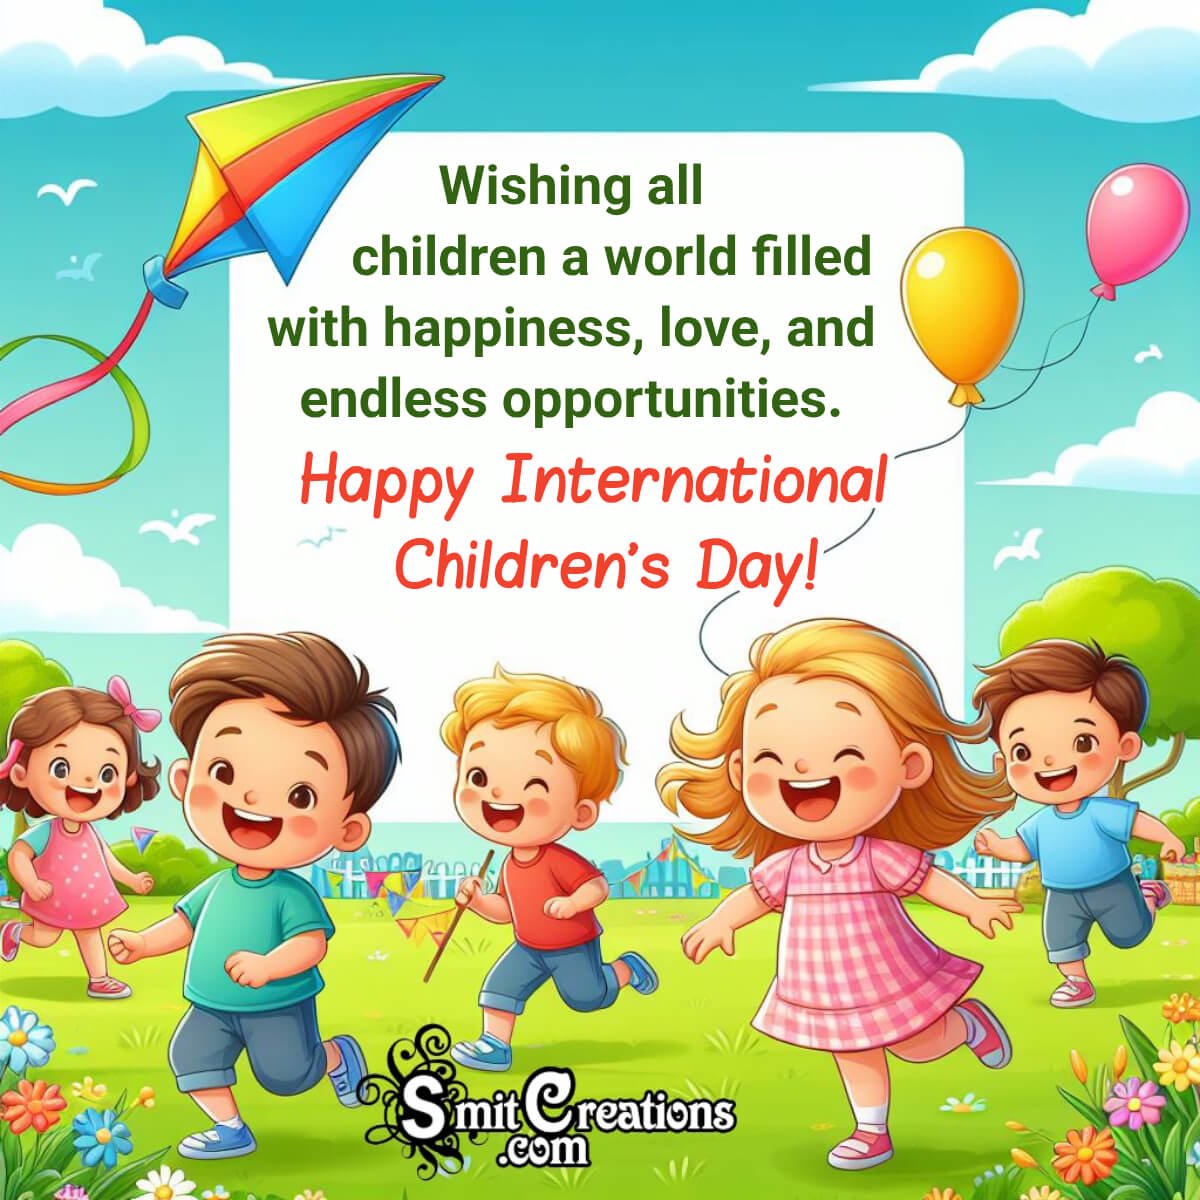 International Children’s Day Message Picture